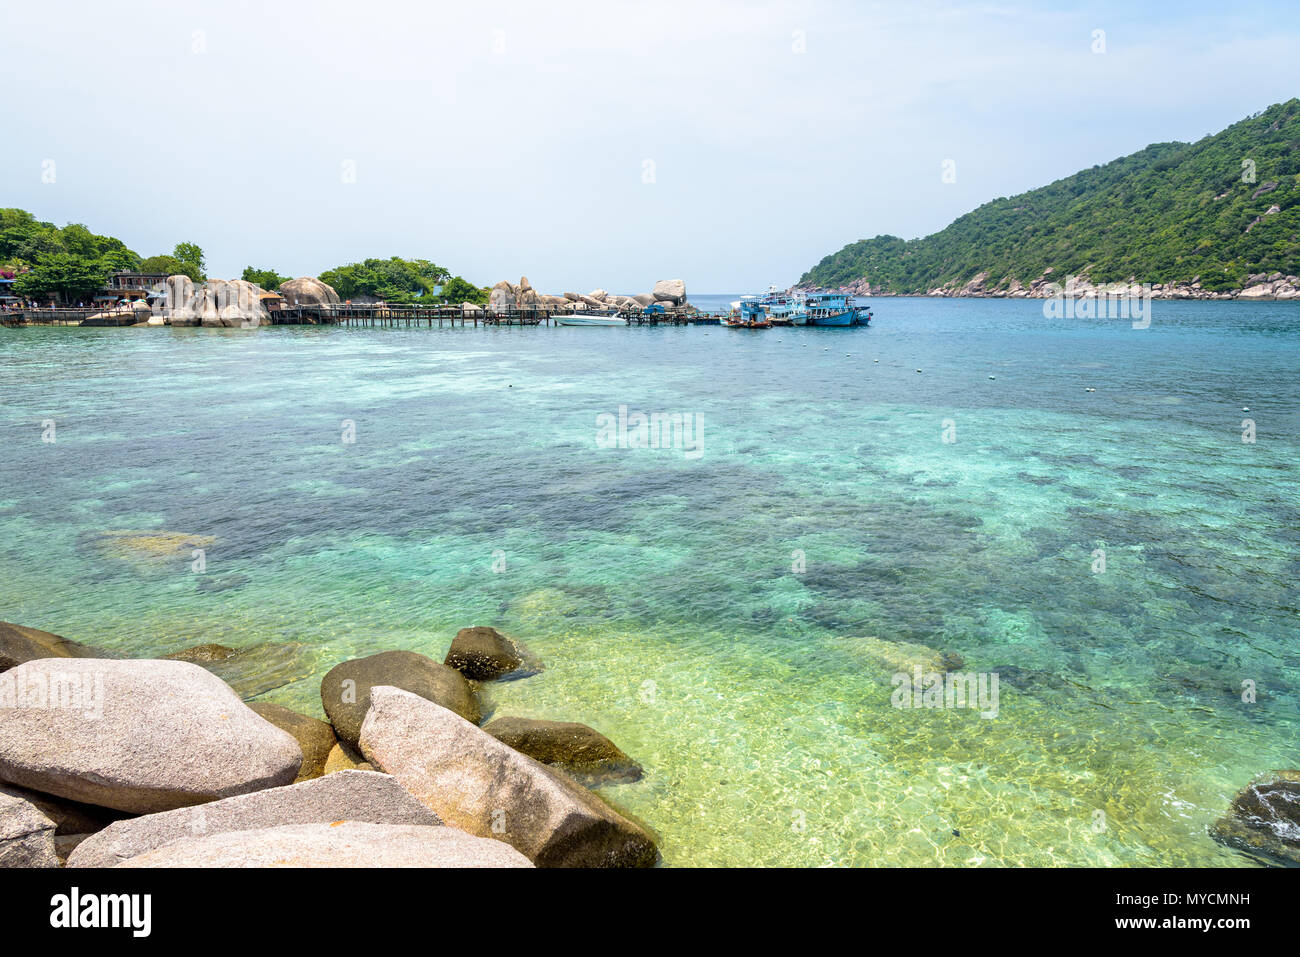 Wunderschöne natürliche Landschaft von klaren Meer Felsen und Korallen zu sehen, an der Anlegestelle für Bootsfahrten auf Koh Nang Yuan Island ist eine berühmte Touristenattraktion i Stockfoto